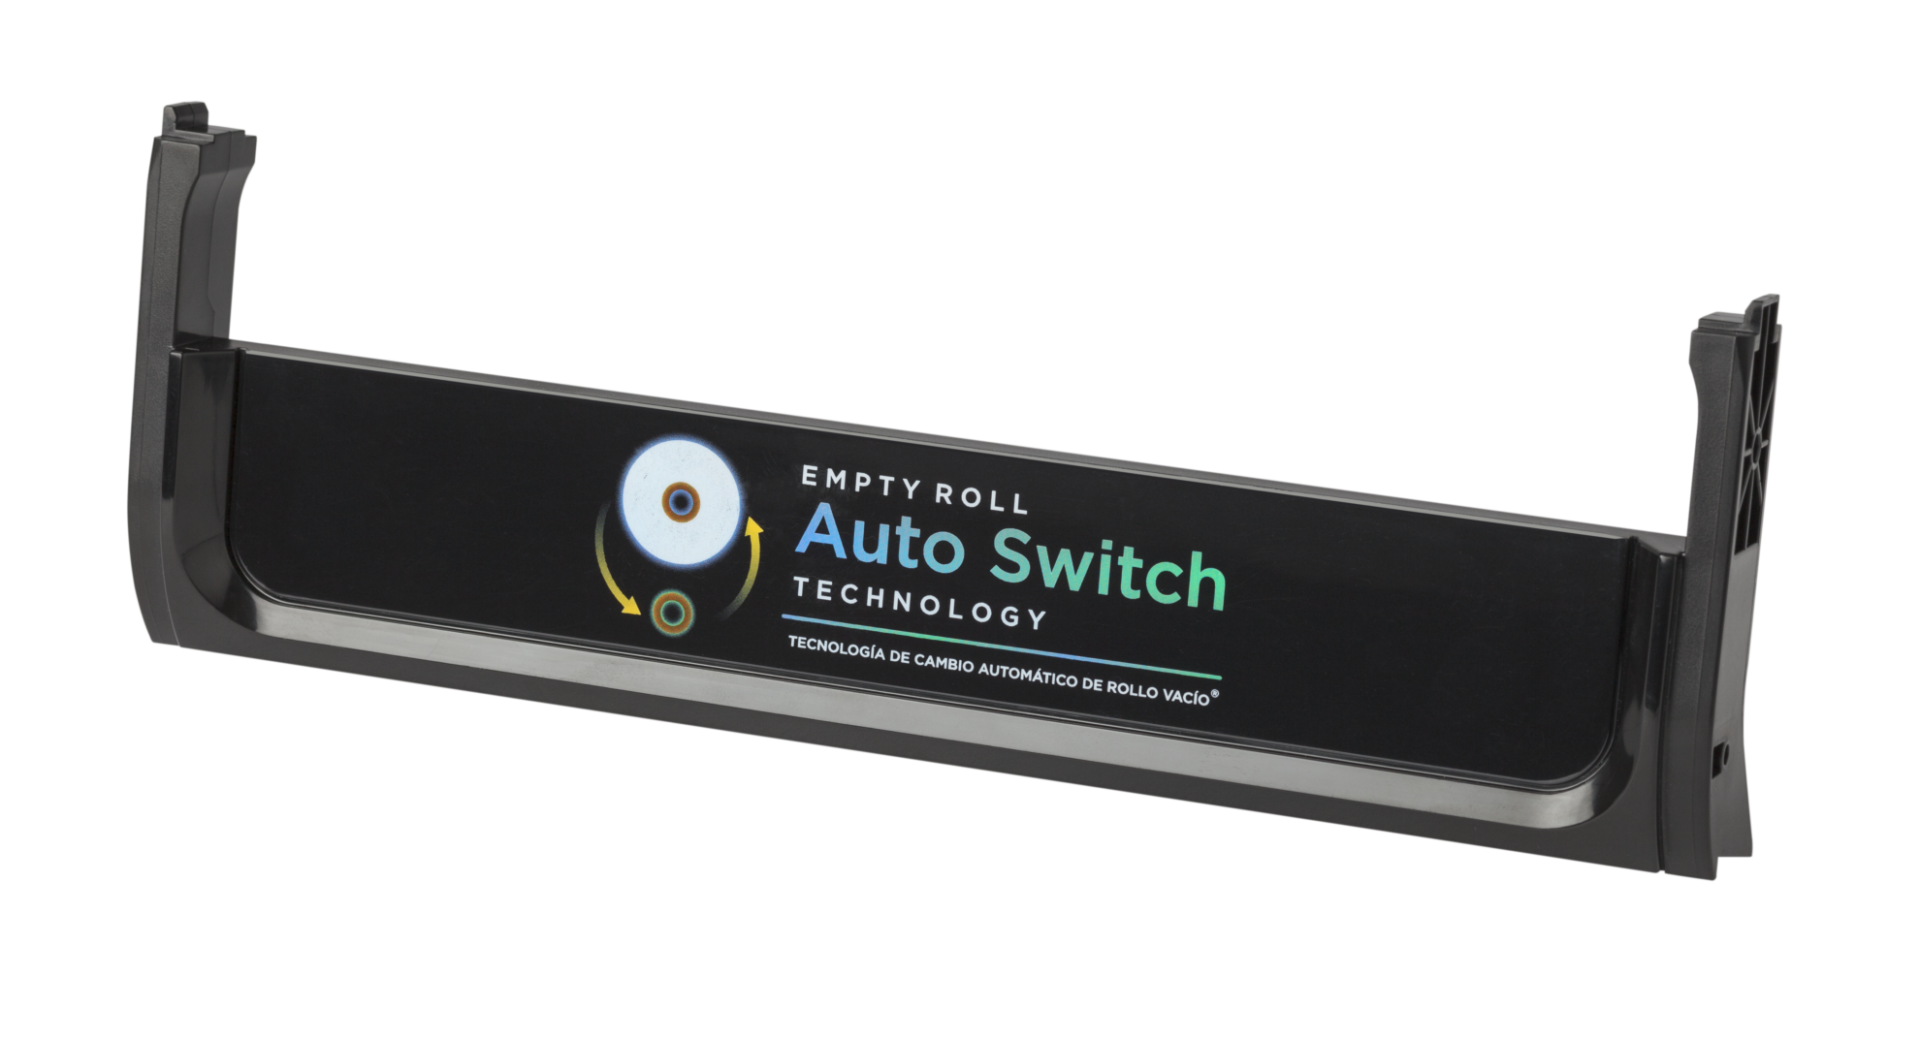 04252019Serigraph 150 e1561142118926 - CP Auto Switch Roll IMD